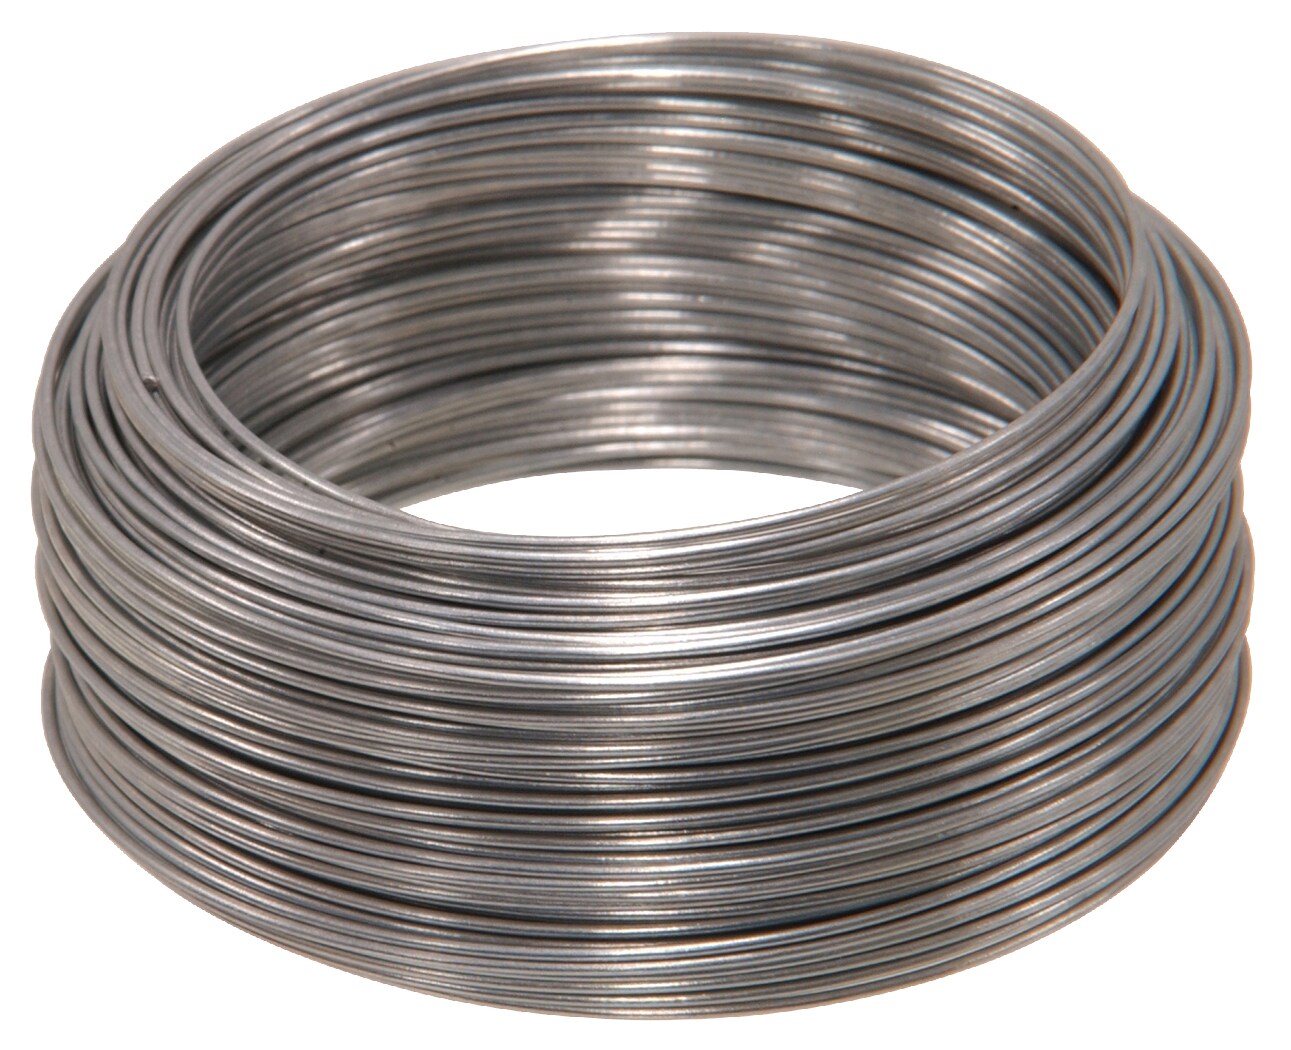 each 100ft Steel Galvanized Wire OOK 50135 22 Gauge 